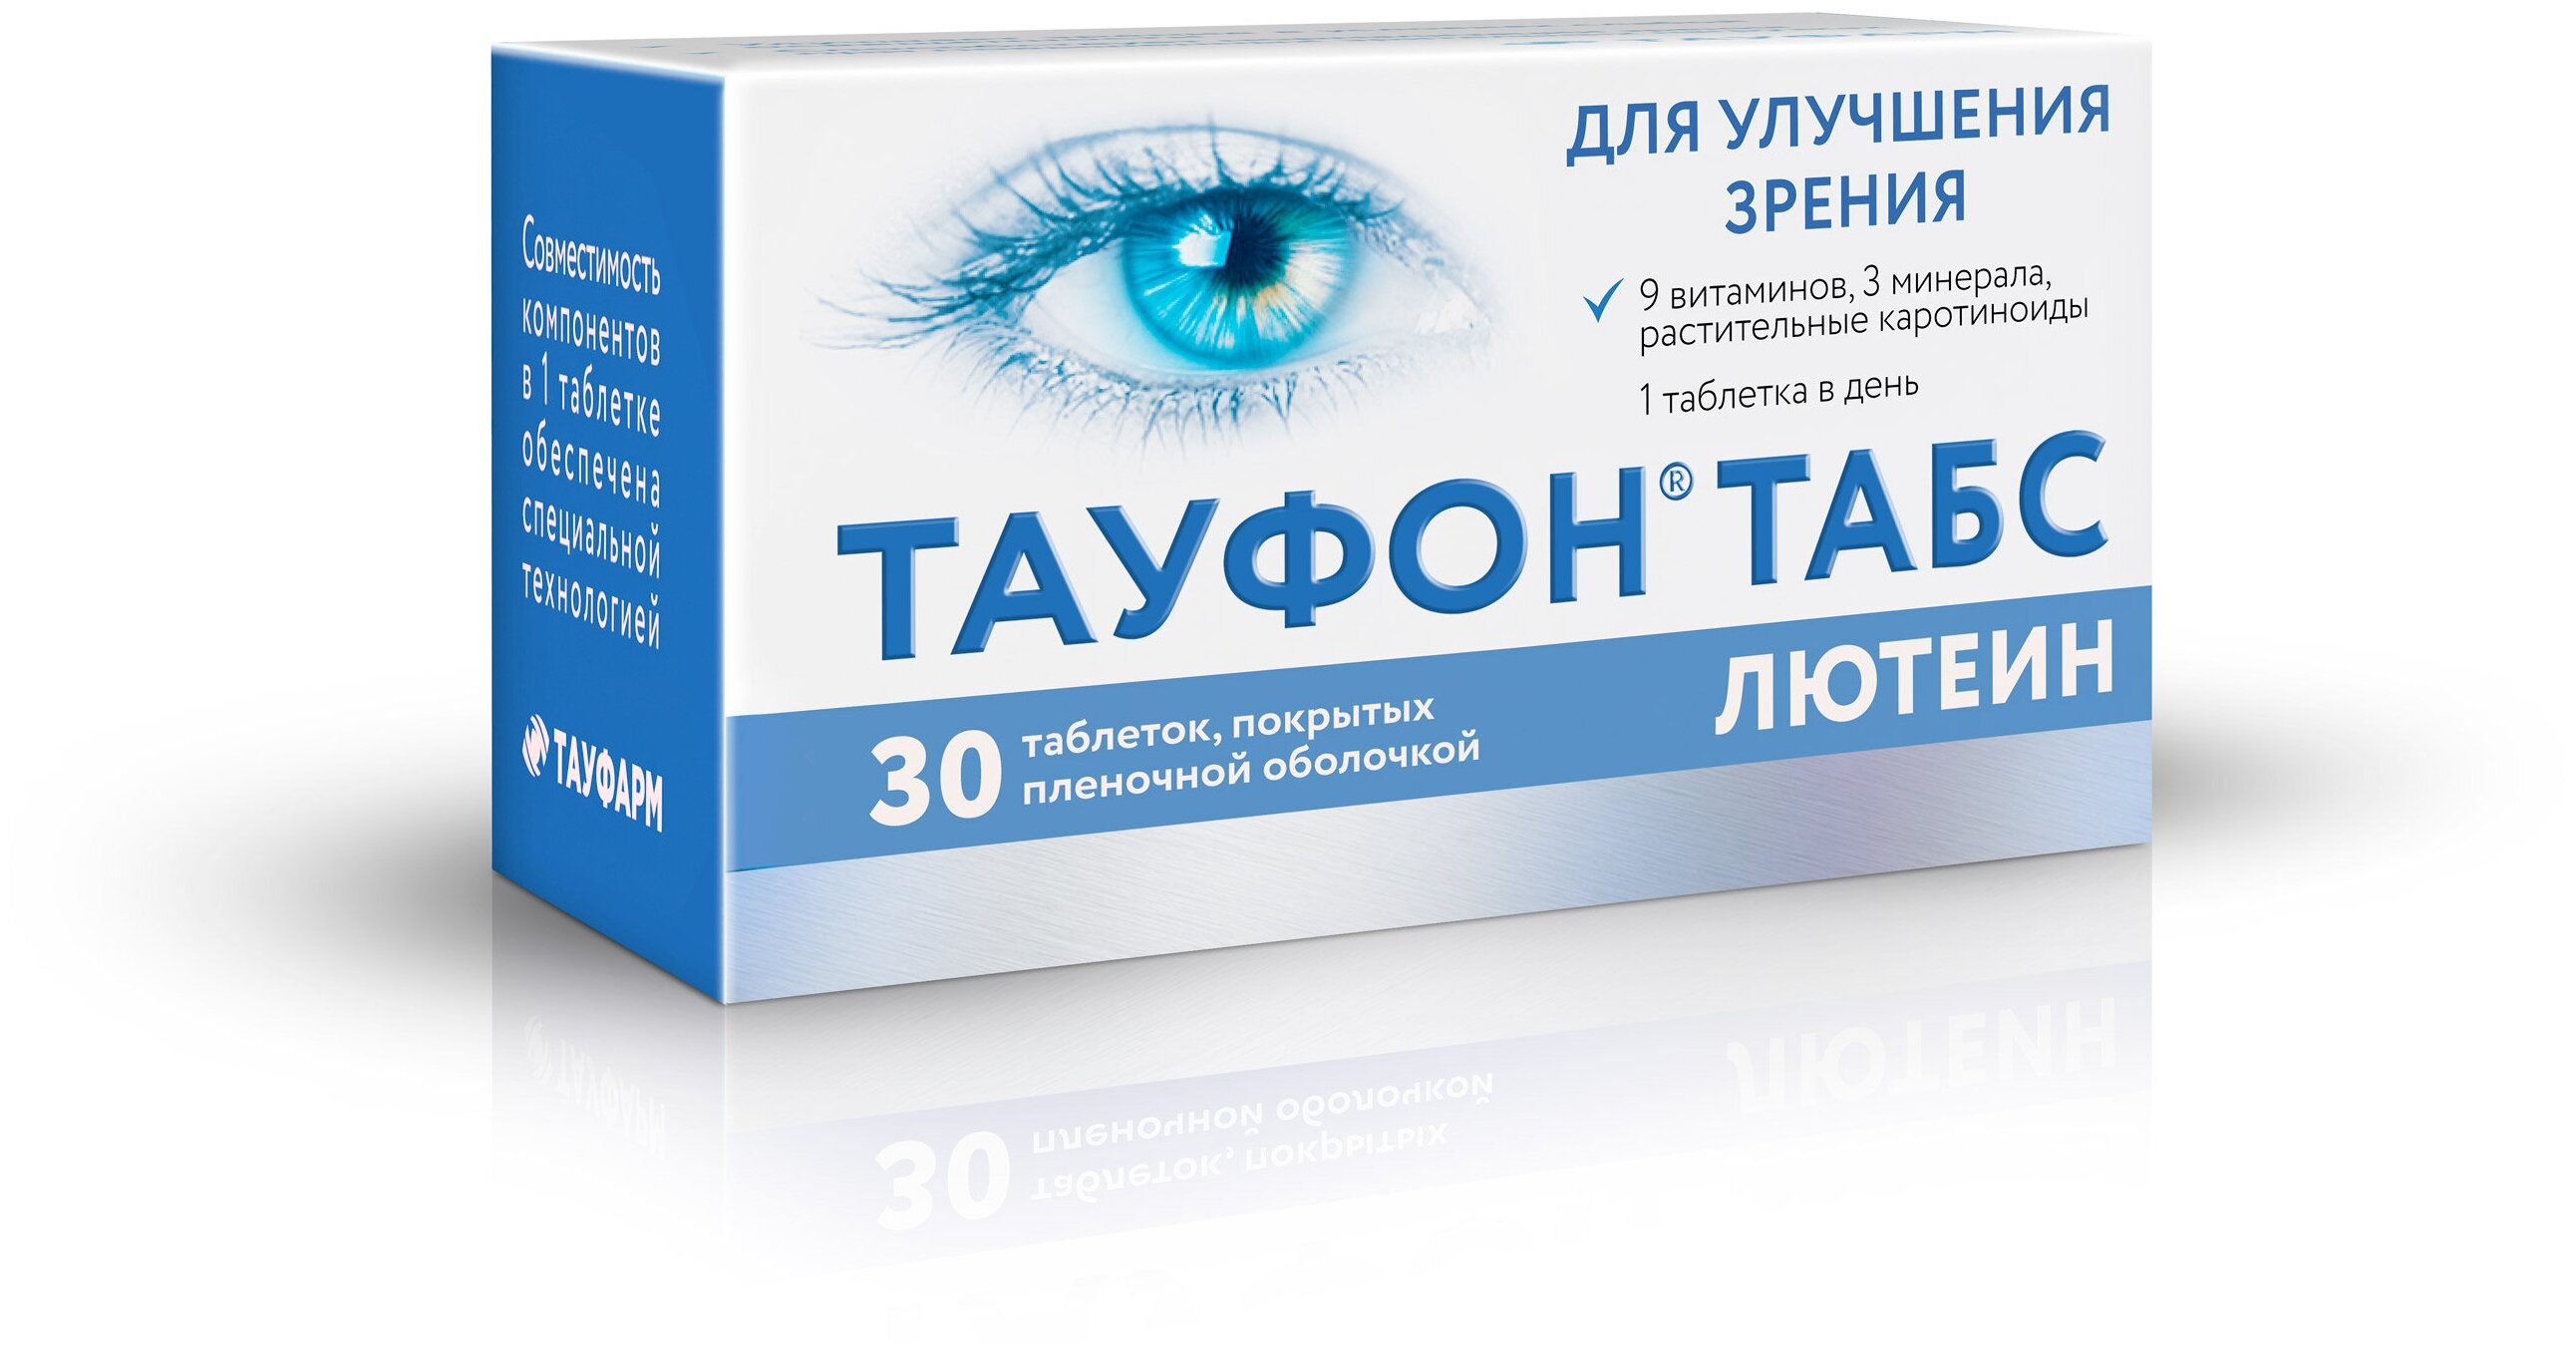 Препарат для улучшения зрения | офталамин